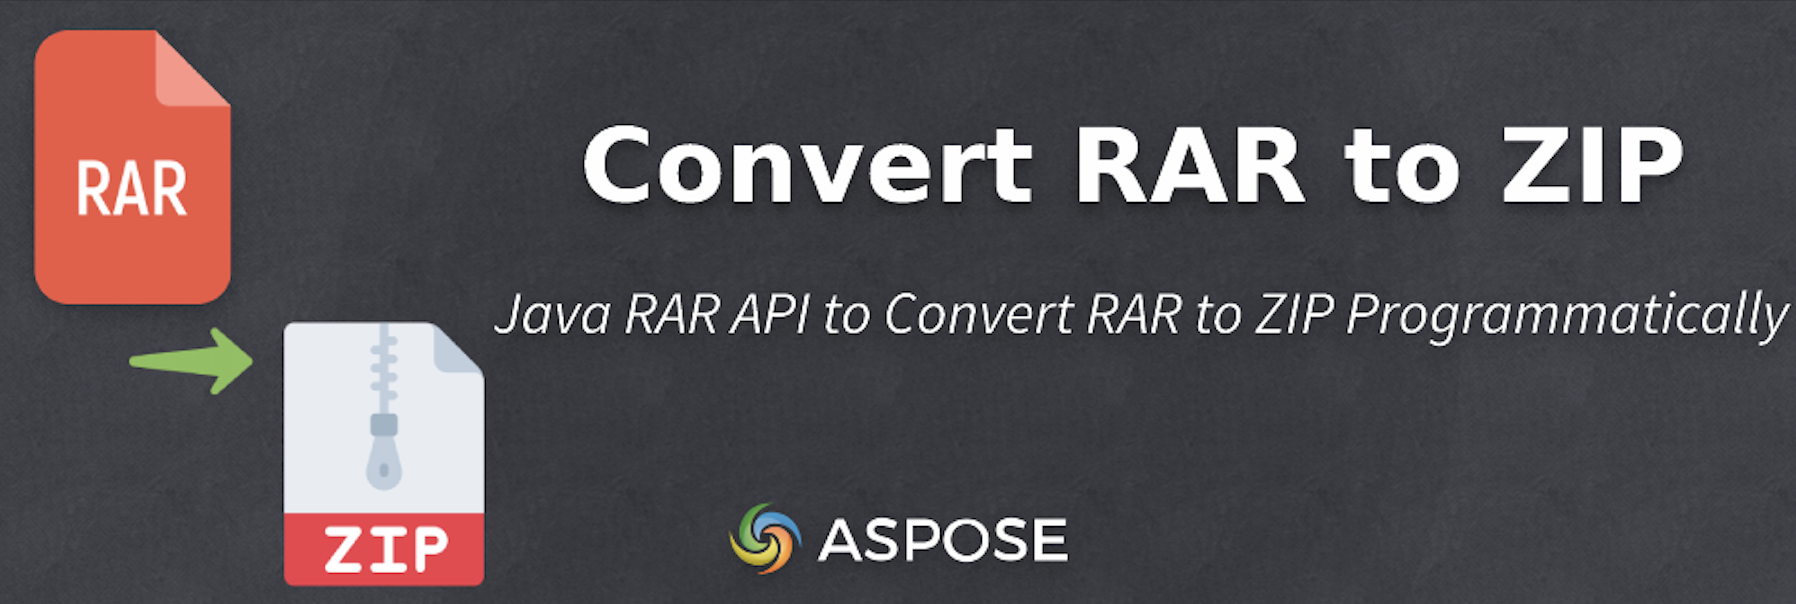 Java'da RAR'ı ZIP'e dönüştürün - Java RAR API